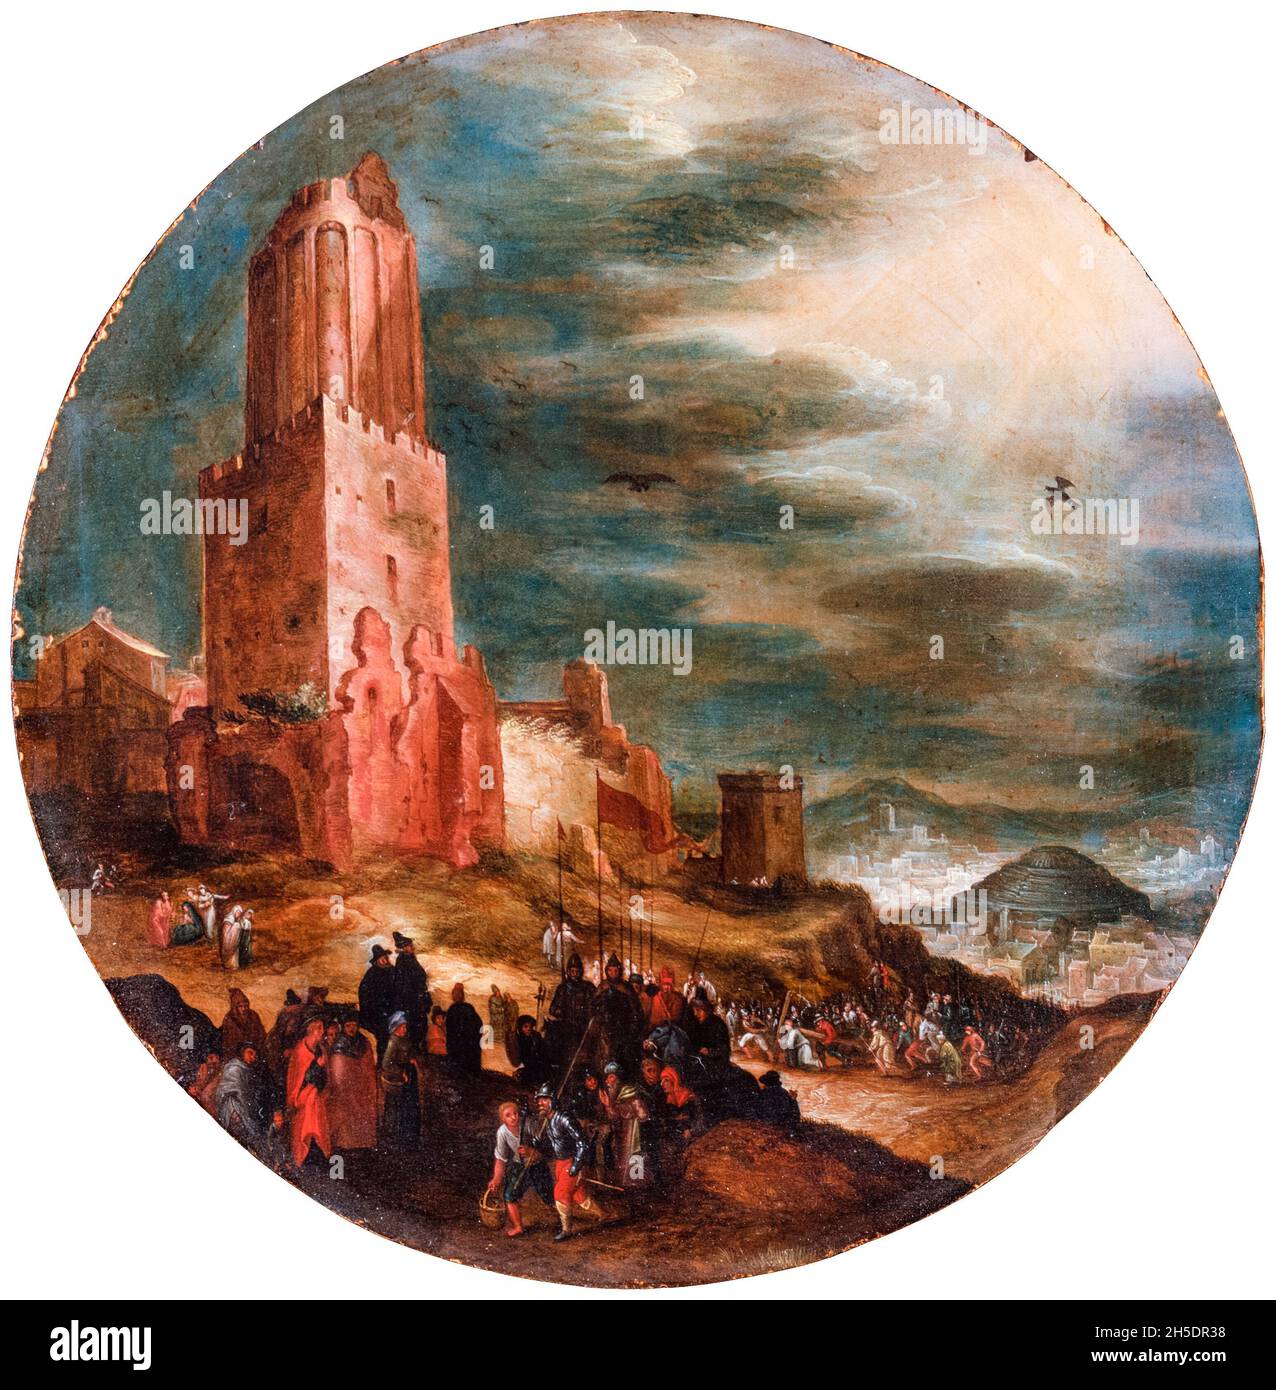 Route vers Golgotha, peinture attribuée à Jan Brueghel l'ancien, vers 1600 Banque D'Images